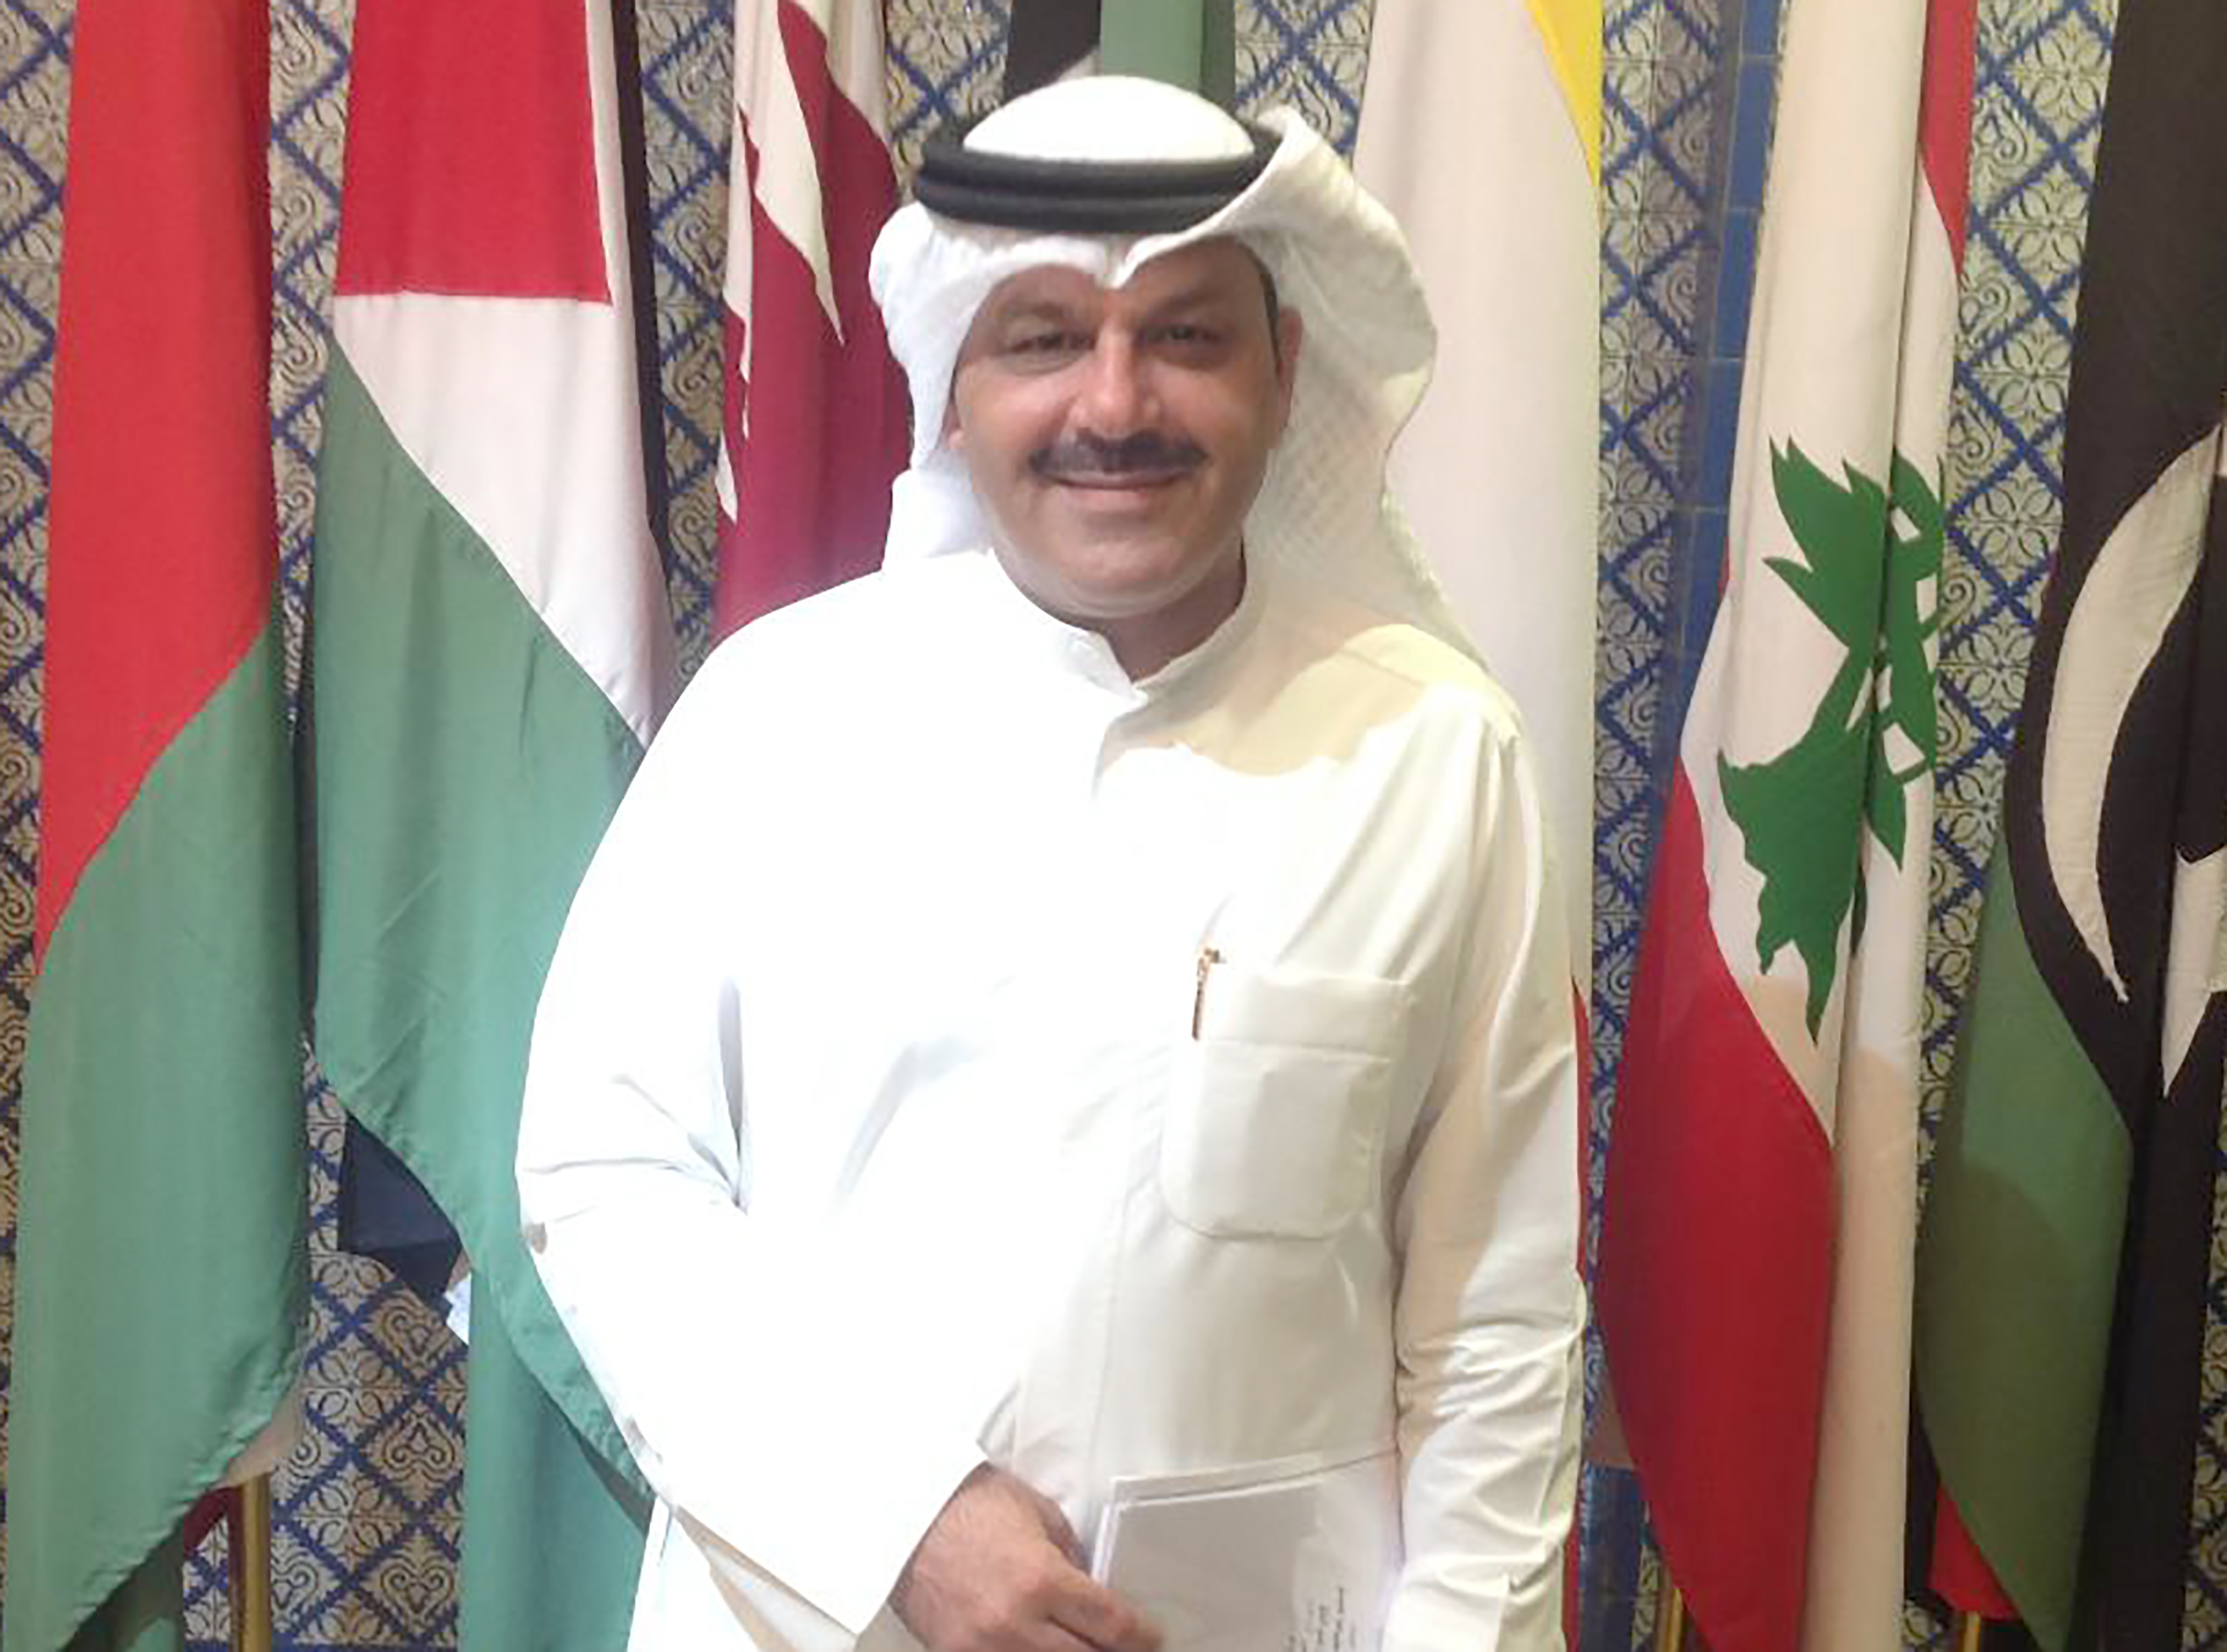 رئيس قسم مقاطعة اسرائيل بالادارة العامة للجمارك الكويتية وليد الحمادي